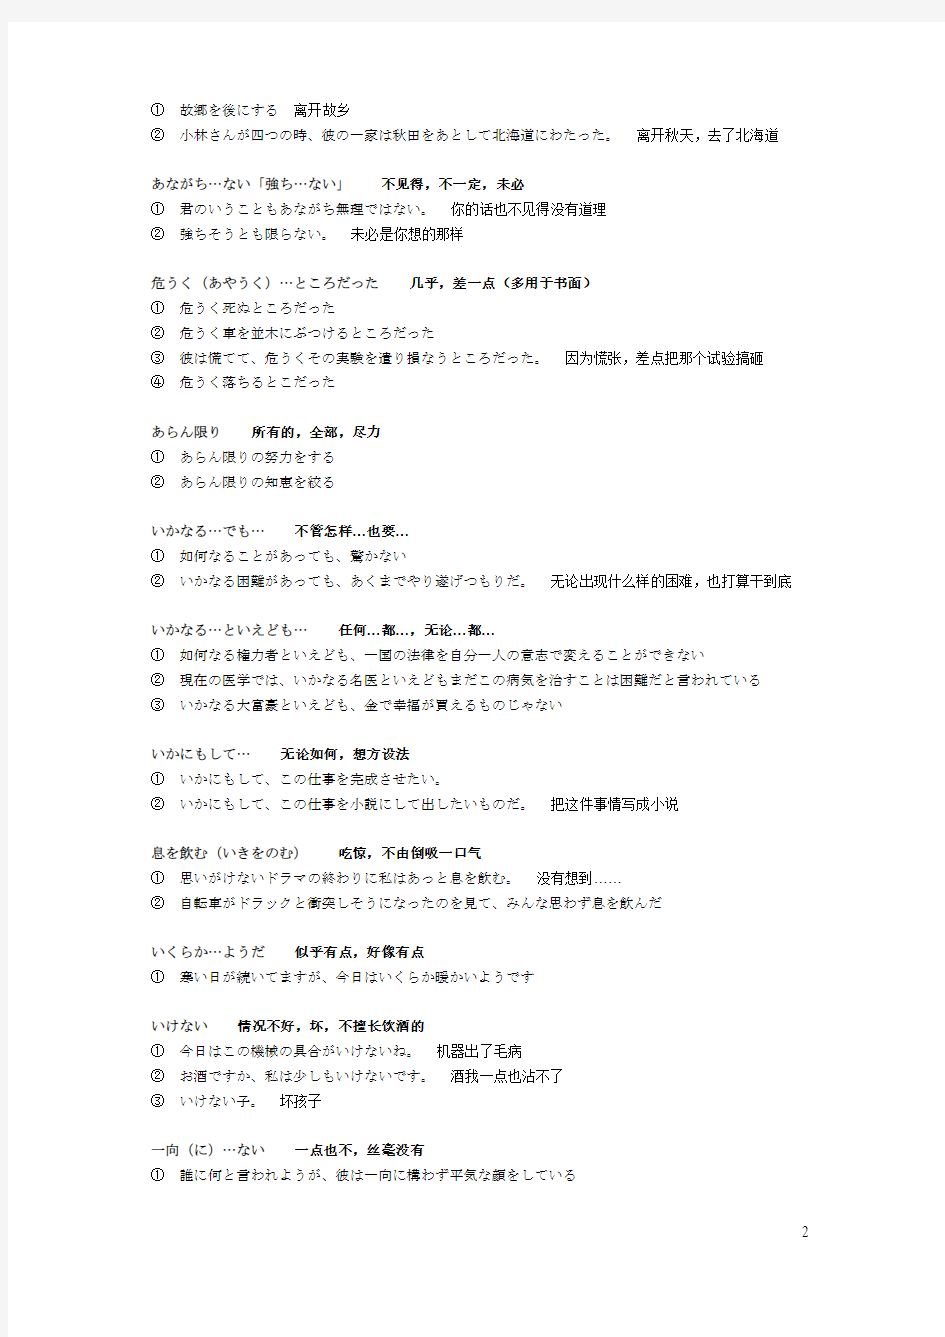 日语1级考试必备惯用句